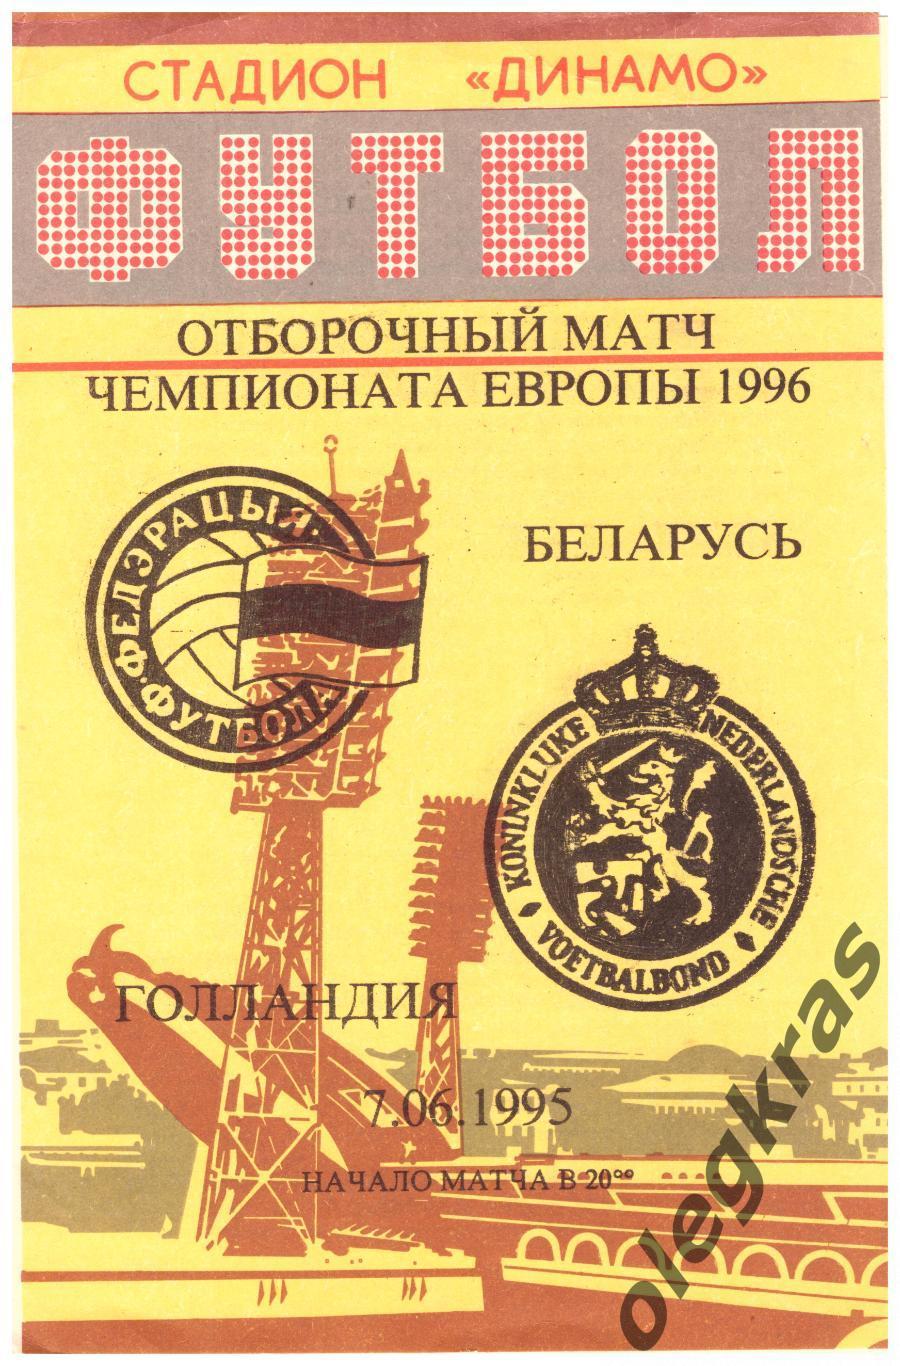 Беларусь - Голландия - 7 июня 1995 года. Отборочный матч Чемпионата Европы.